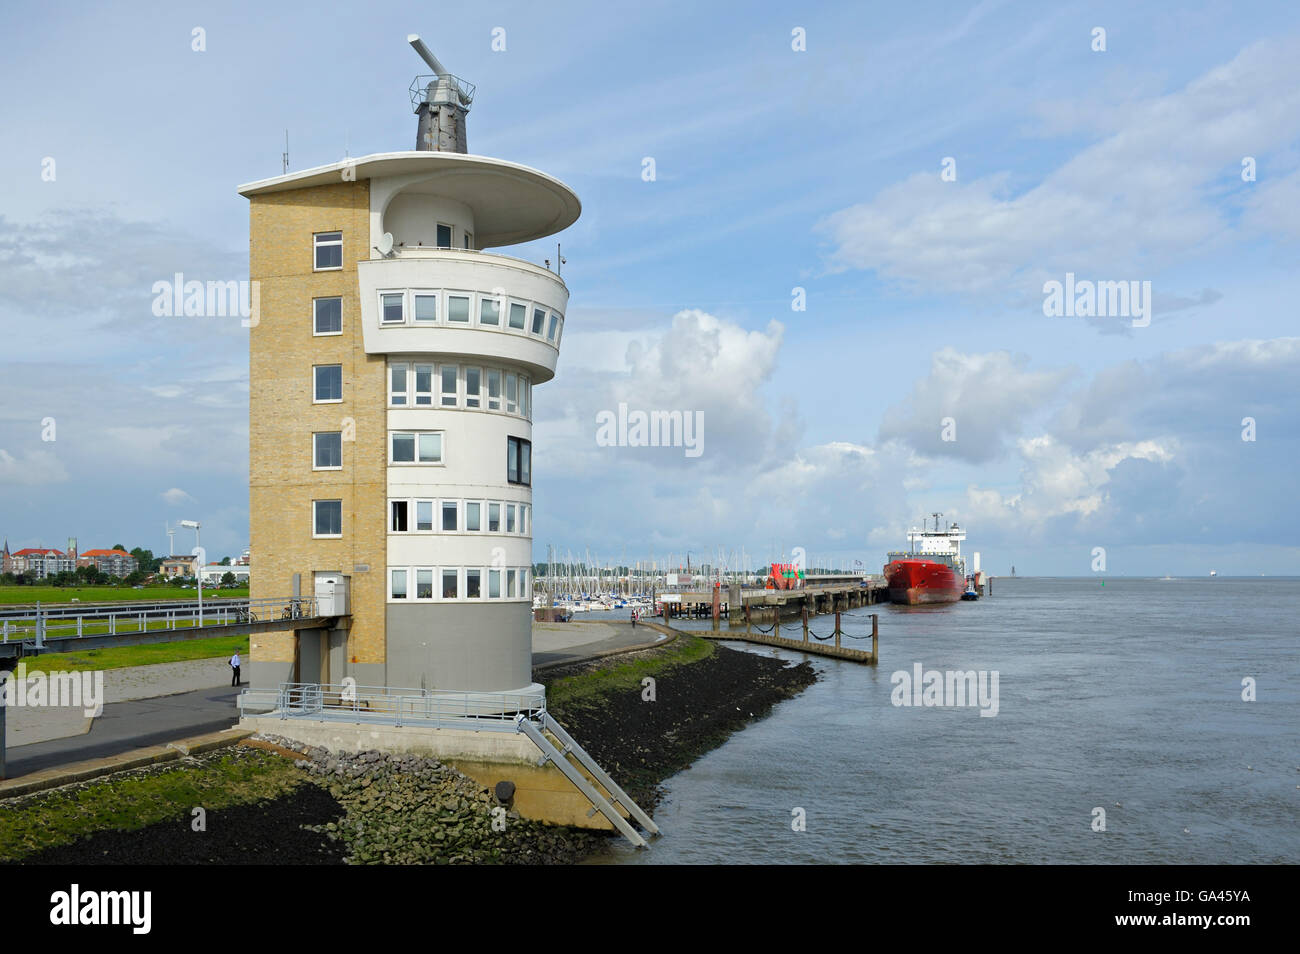 Radarturm, Hafen, Cuxhaven, Deutschland Stockfoto